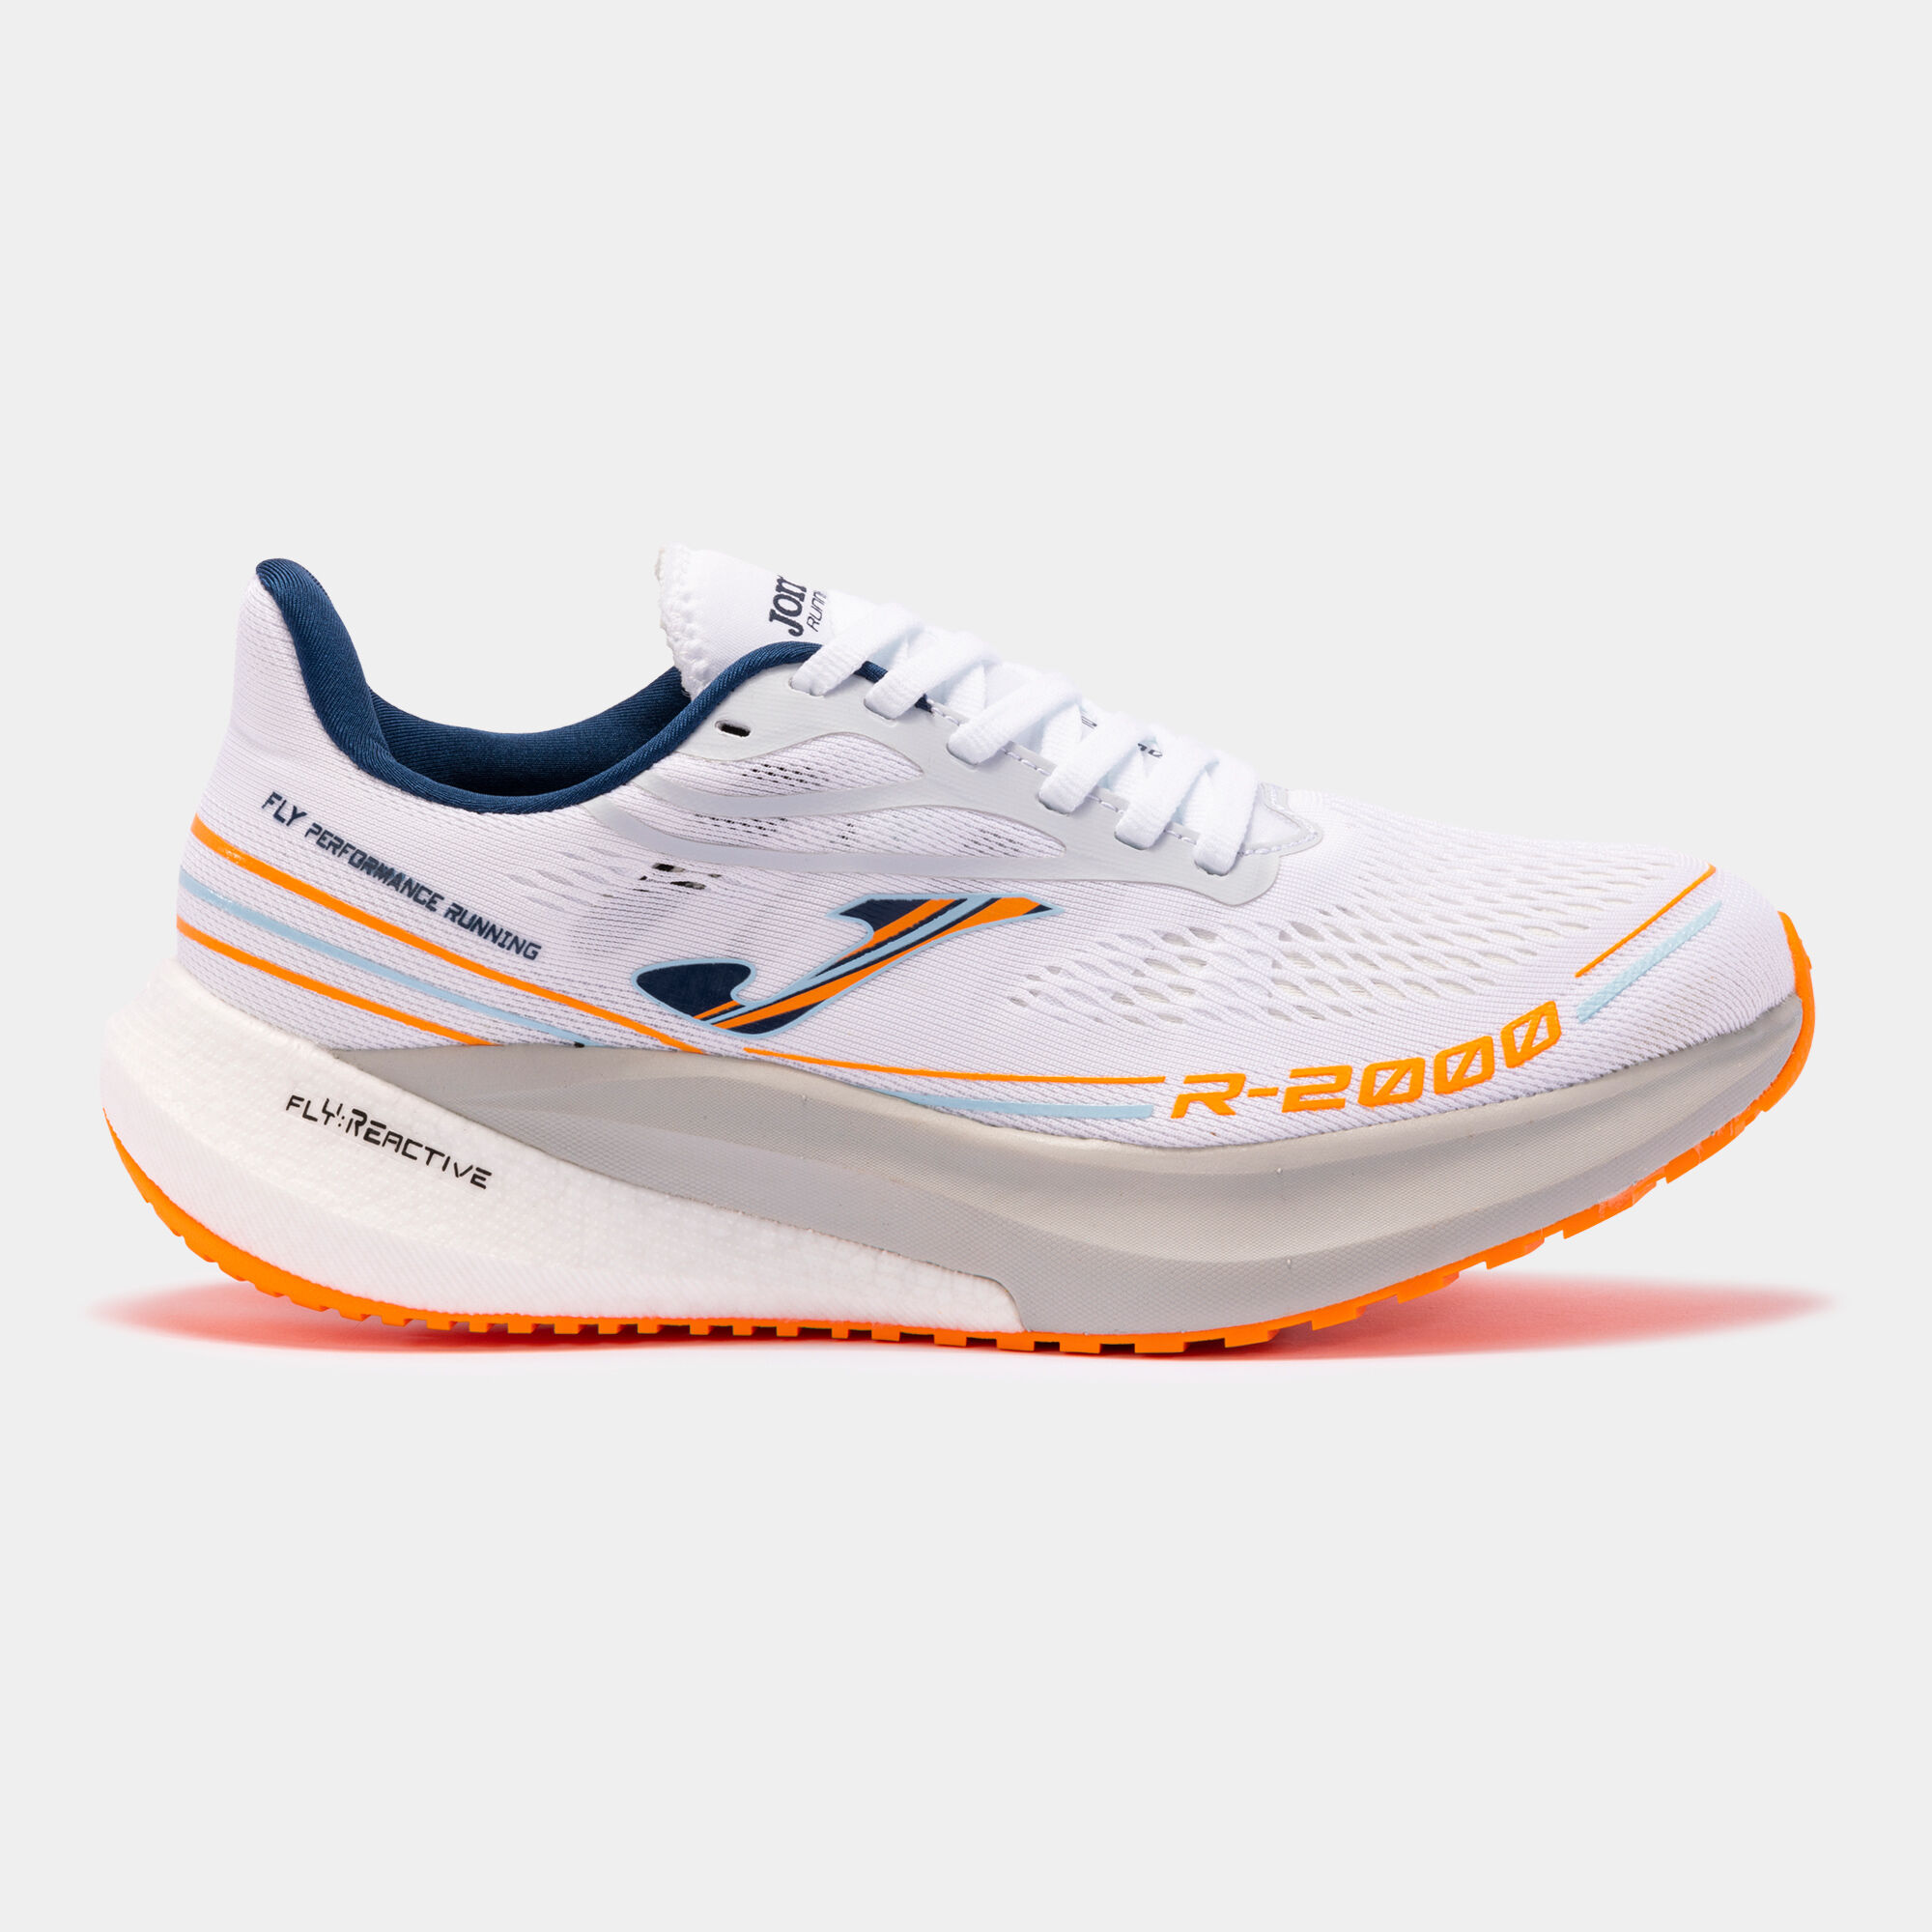 Pantofi sport alergare R.2000 22 bărbaȚi alb portocaliu fosforescent